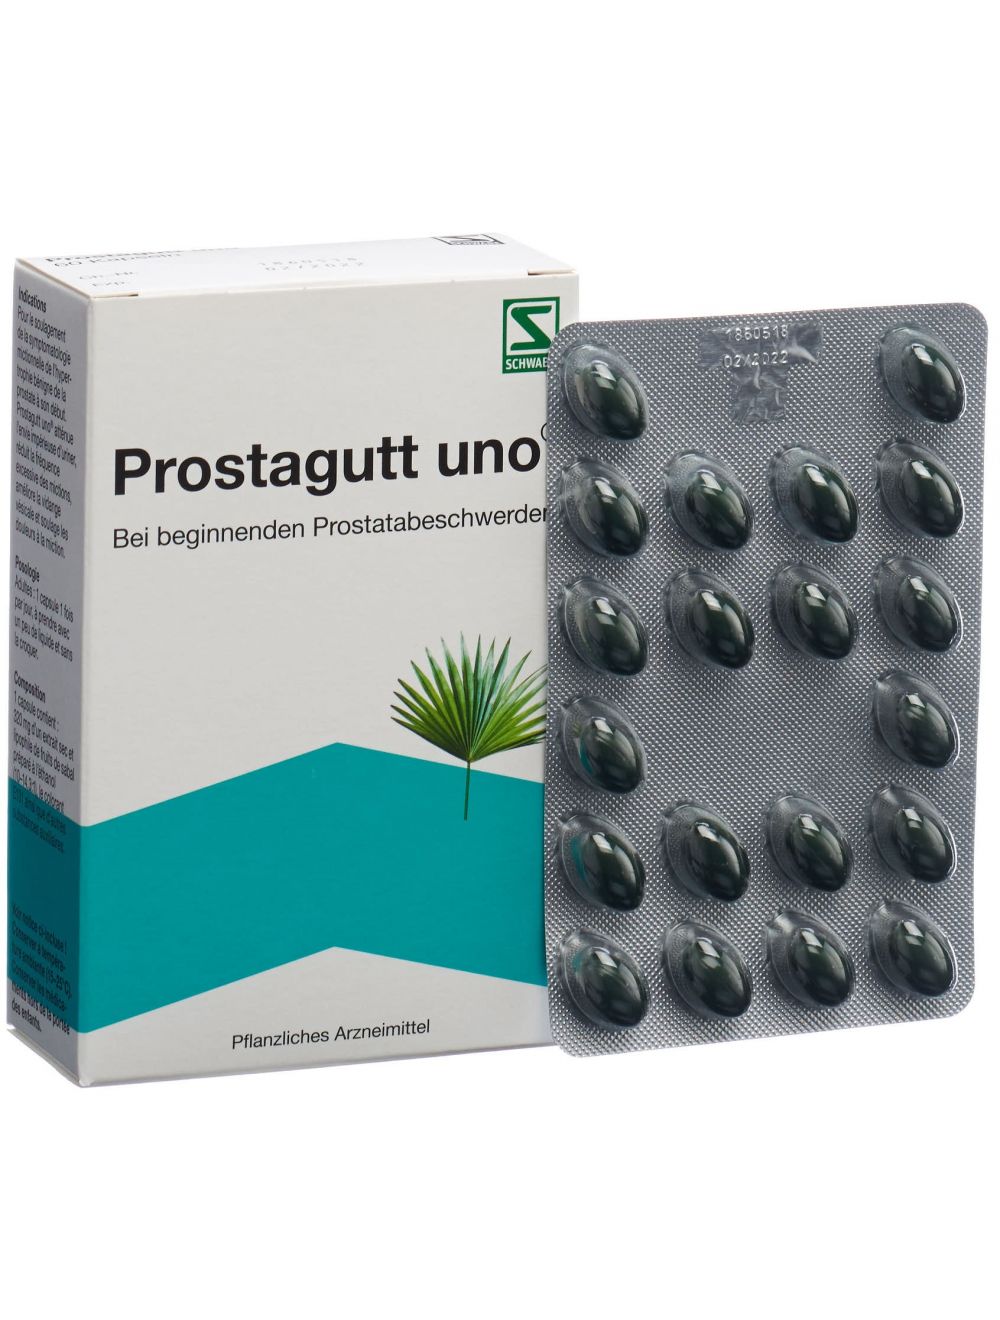 médicament prostate sans ordonnance)